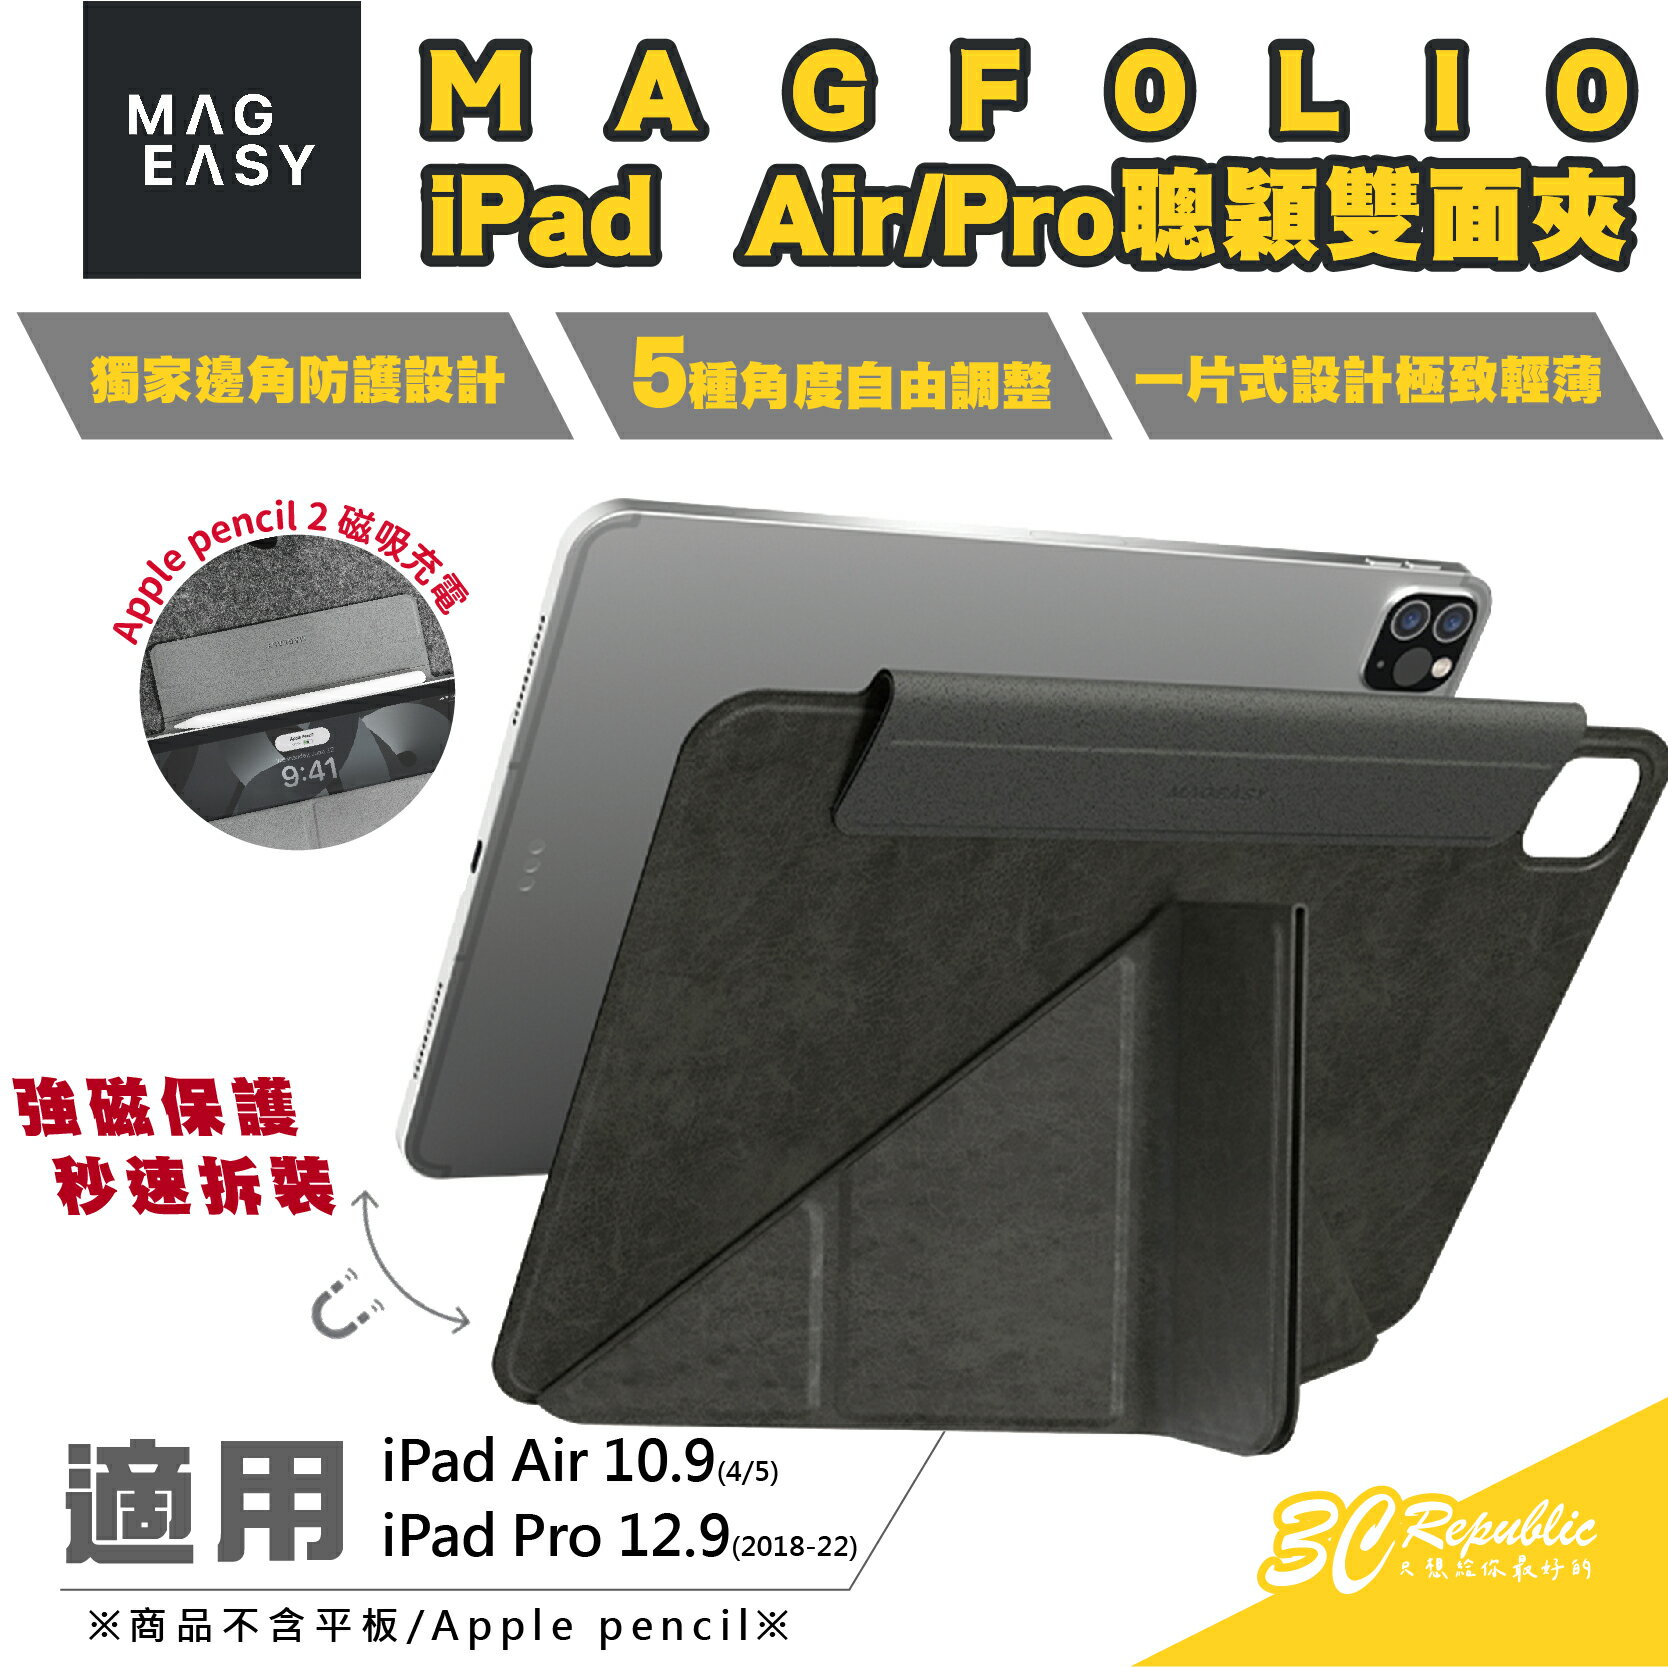 MAGEASY MAGFOLIO 聰穎 雙面夾 平板 保護套 保護殼 皮套 iPad Air 10.9 Pro 12.9【APP下單8%點數回饋】